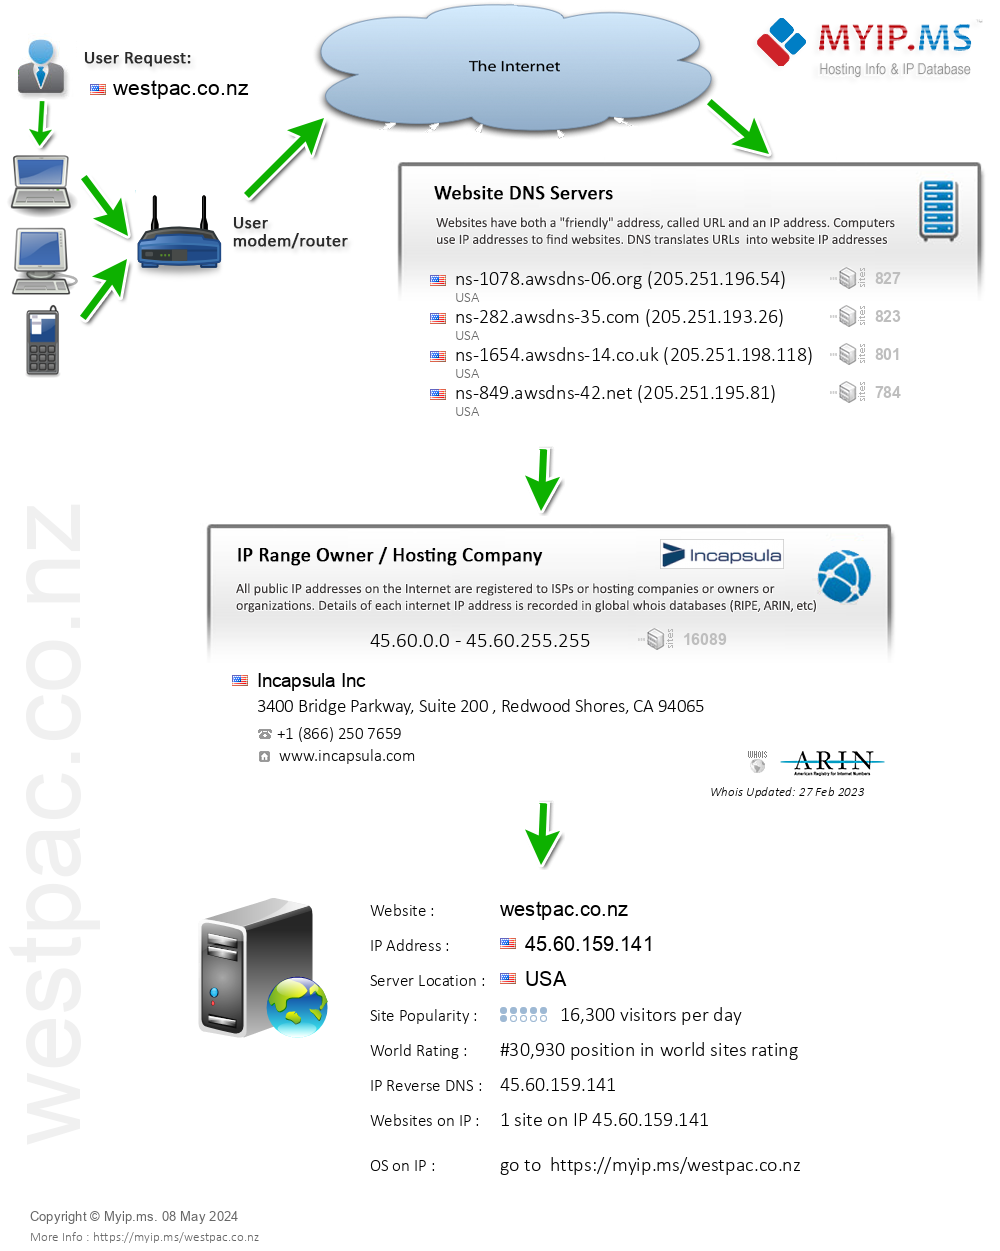 Westpac.co.nz - Website Hosting Visual IP Diagram